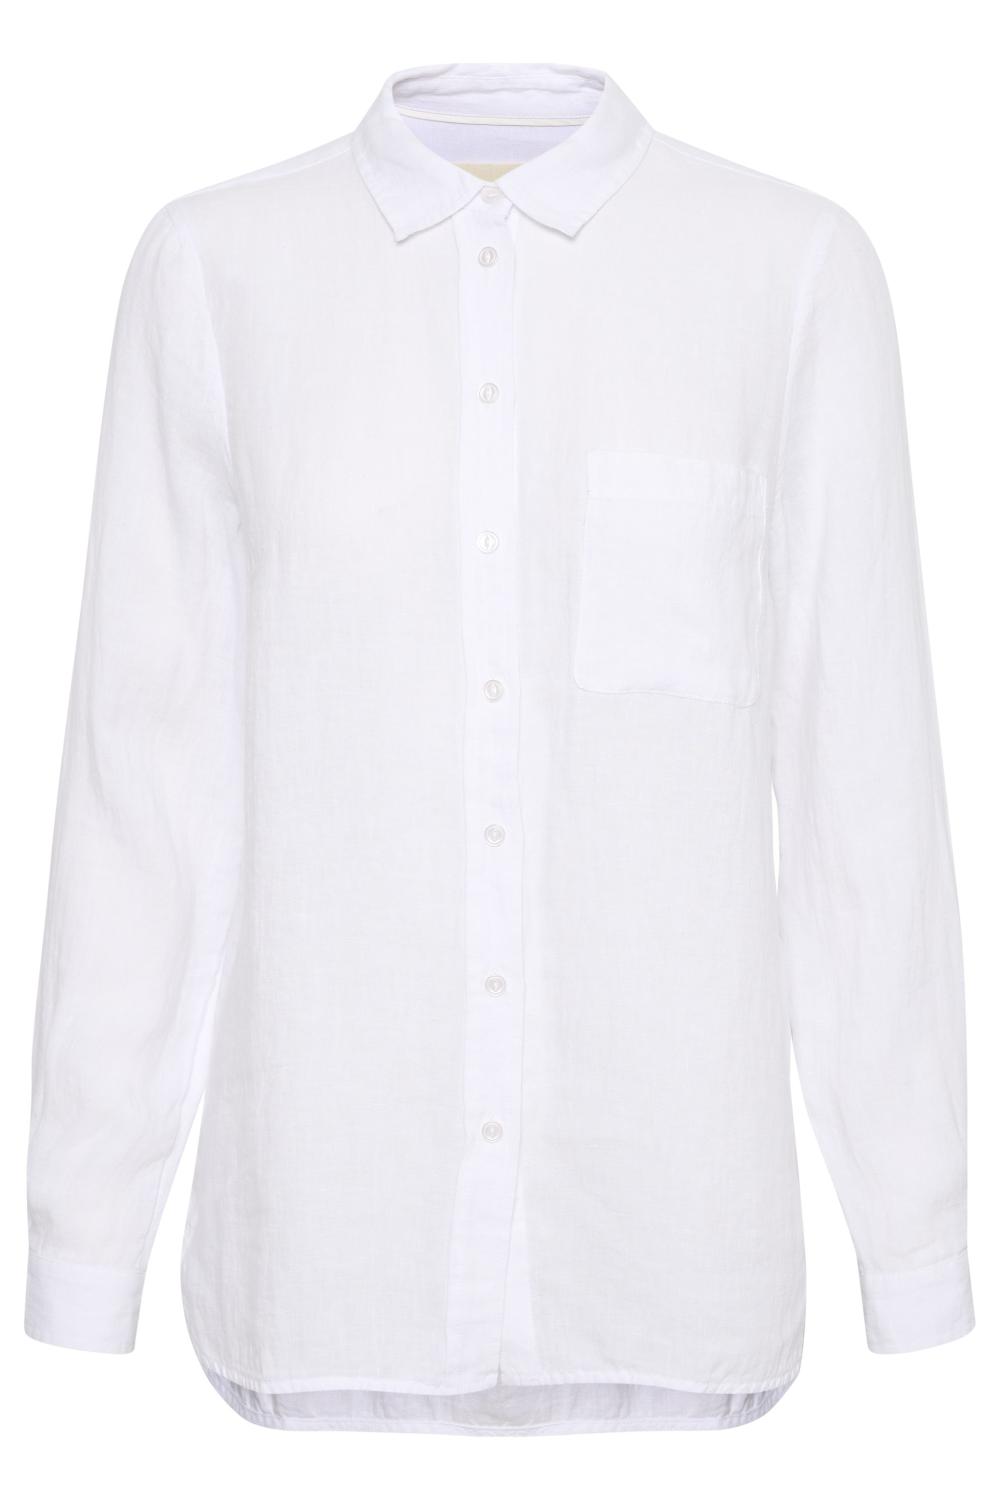 KivasPW SH Shirt Bright White